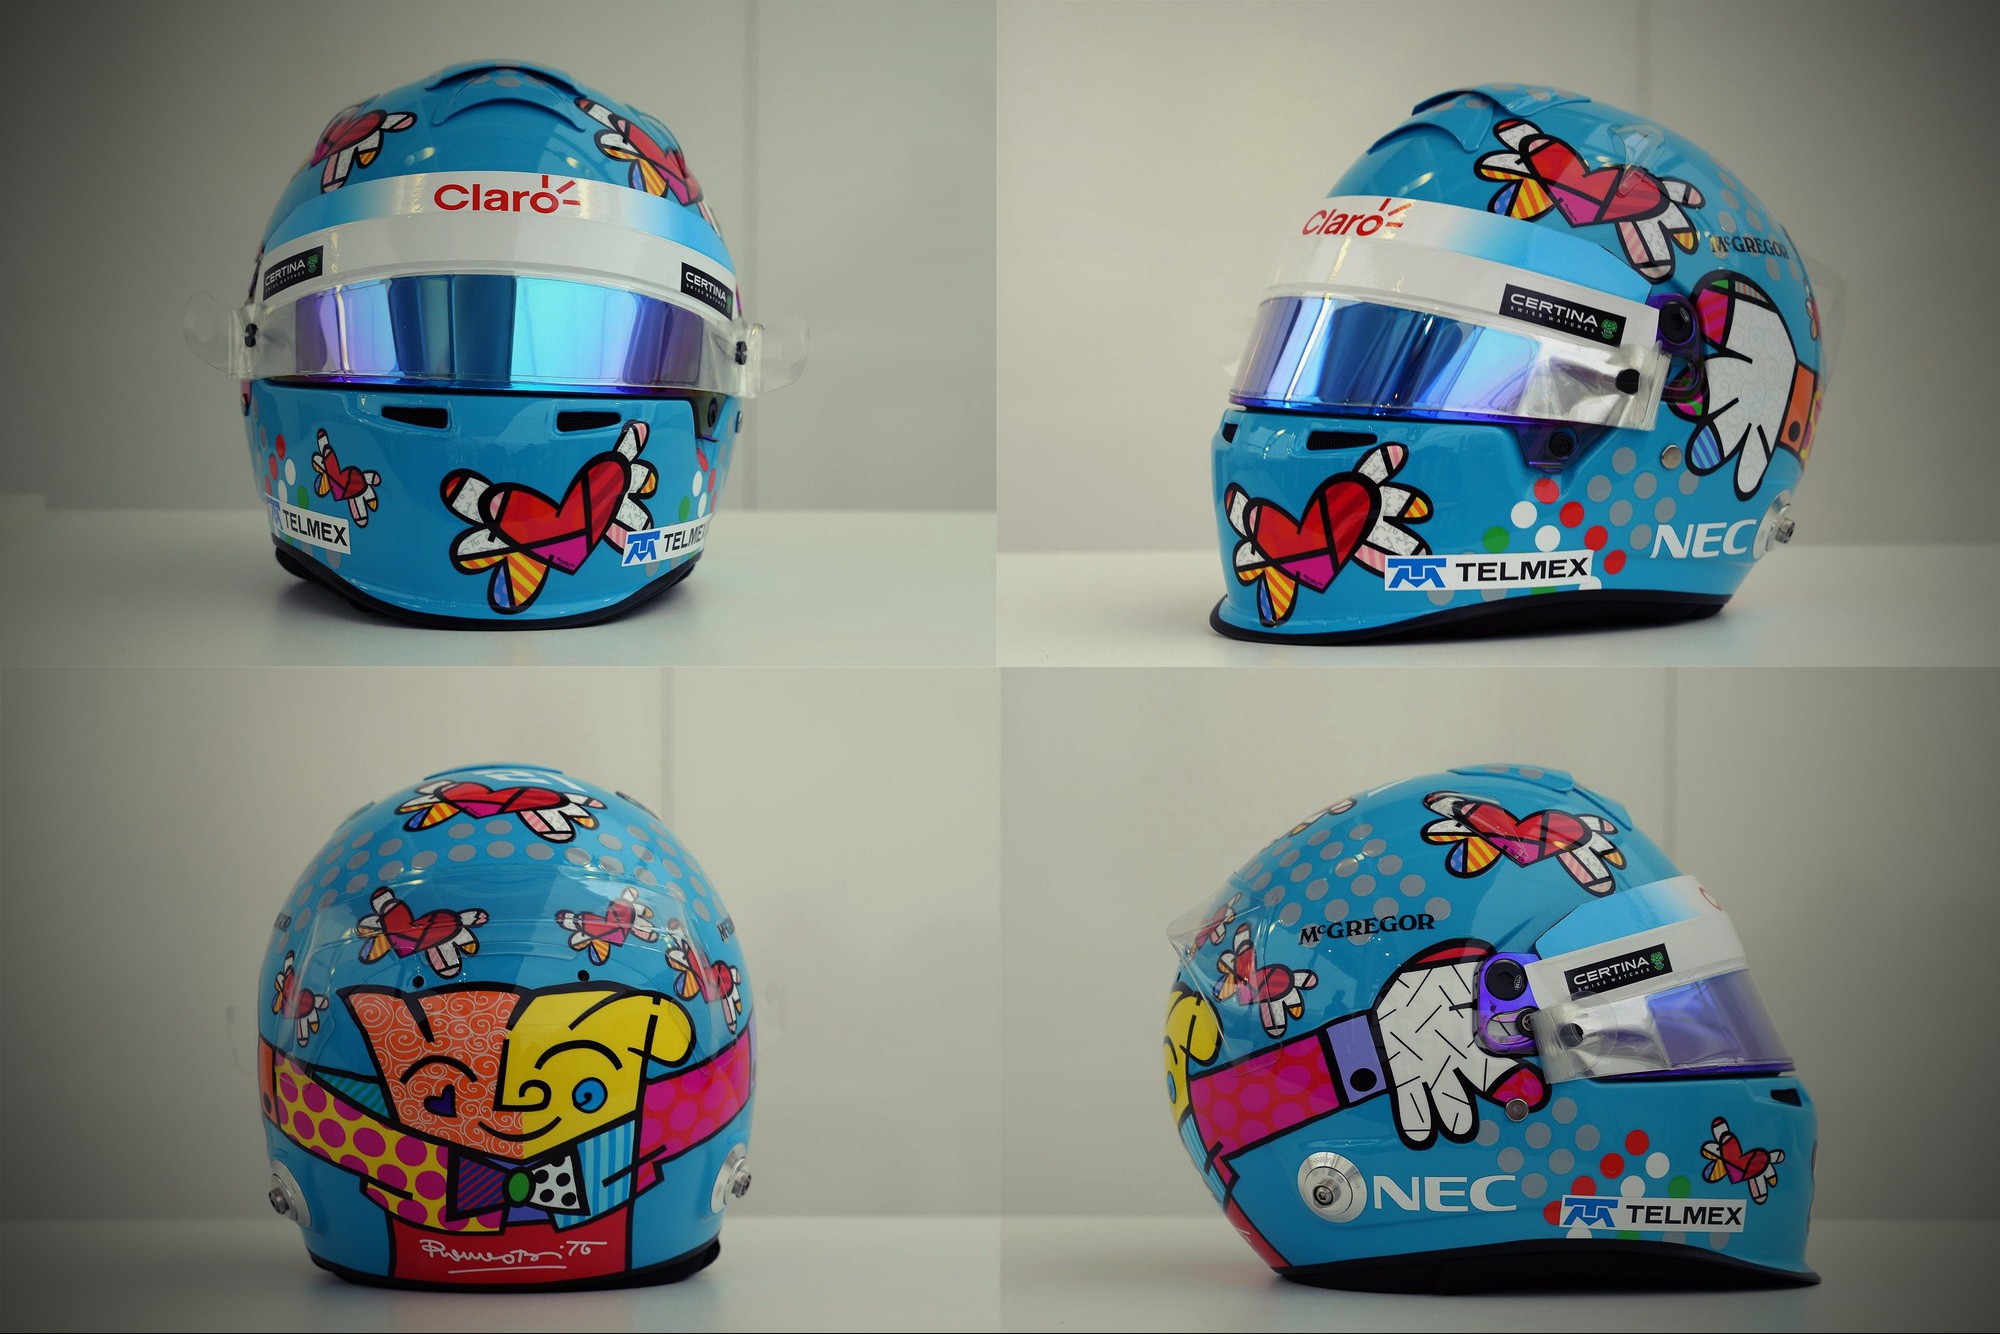 Шлем Эстебана Гутьерреса на Гран-При Монако 2014 | 2014 Monaco Grand Prix helmet of Esteban Gutierrez